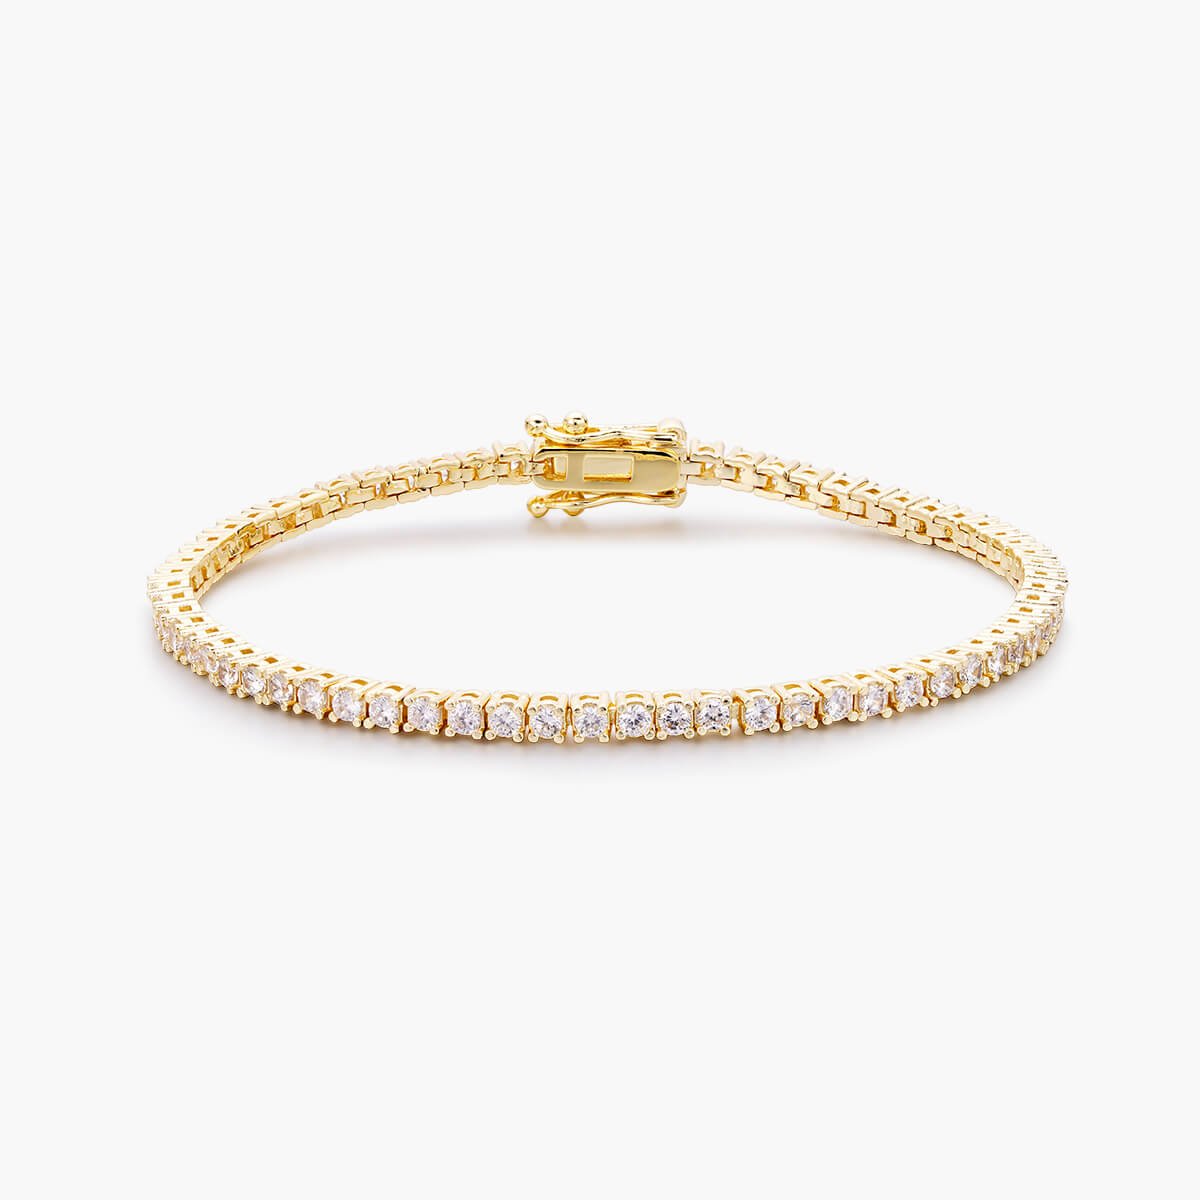 10K Solid Gold 2mm Moissanite Tennis Bracelet - The Real Jewelry CompanyThe Real Jewelry CompanyBracelets